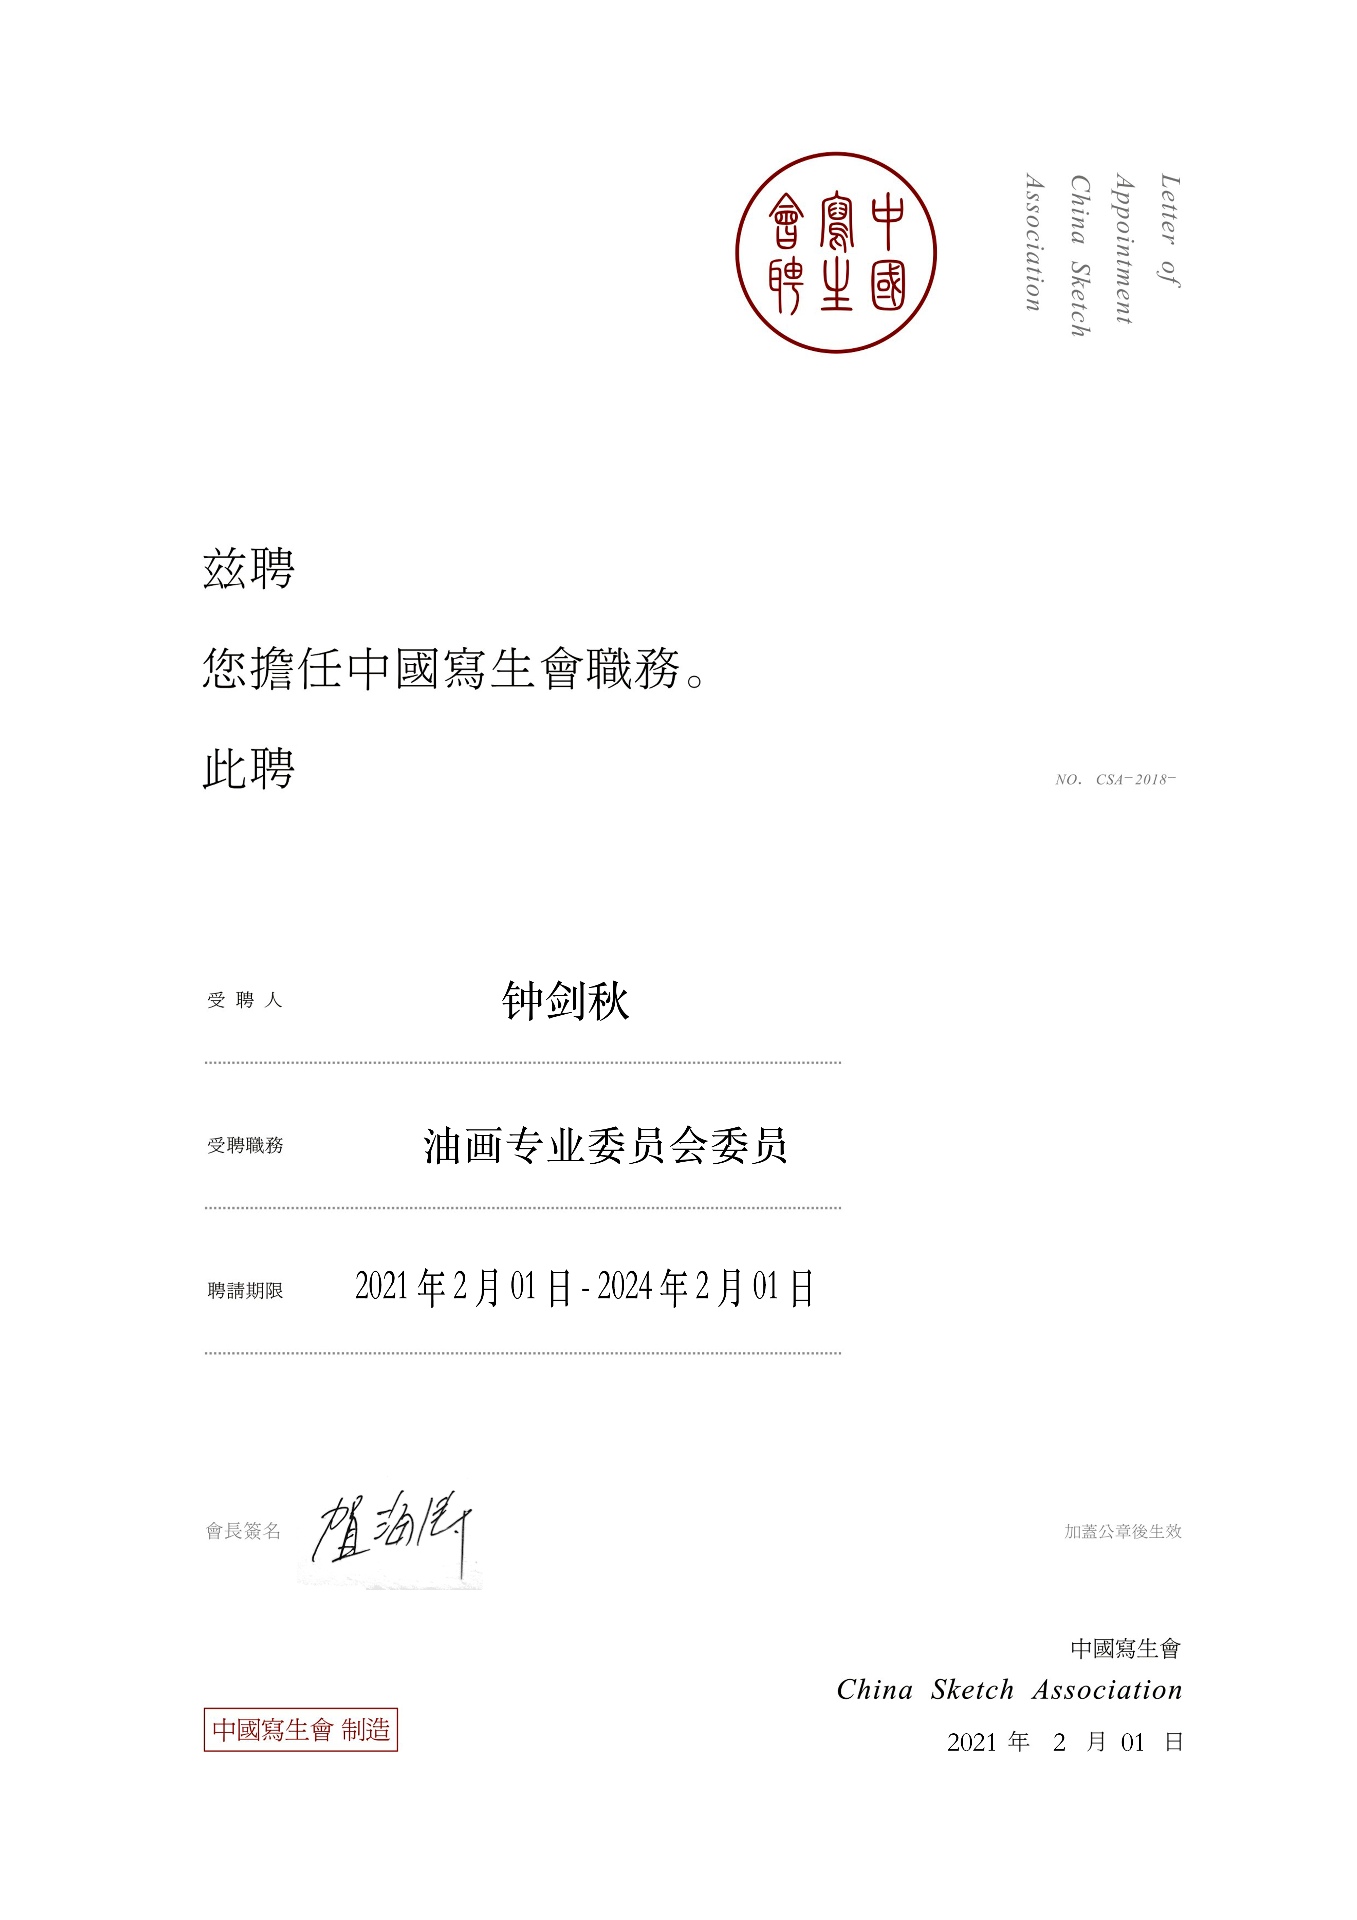 鐘劍秋副教授接受中國寫生會油畫專業委員會委員聘書